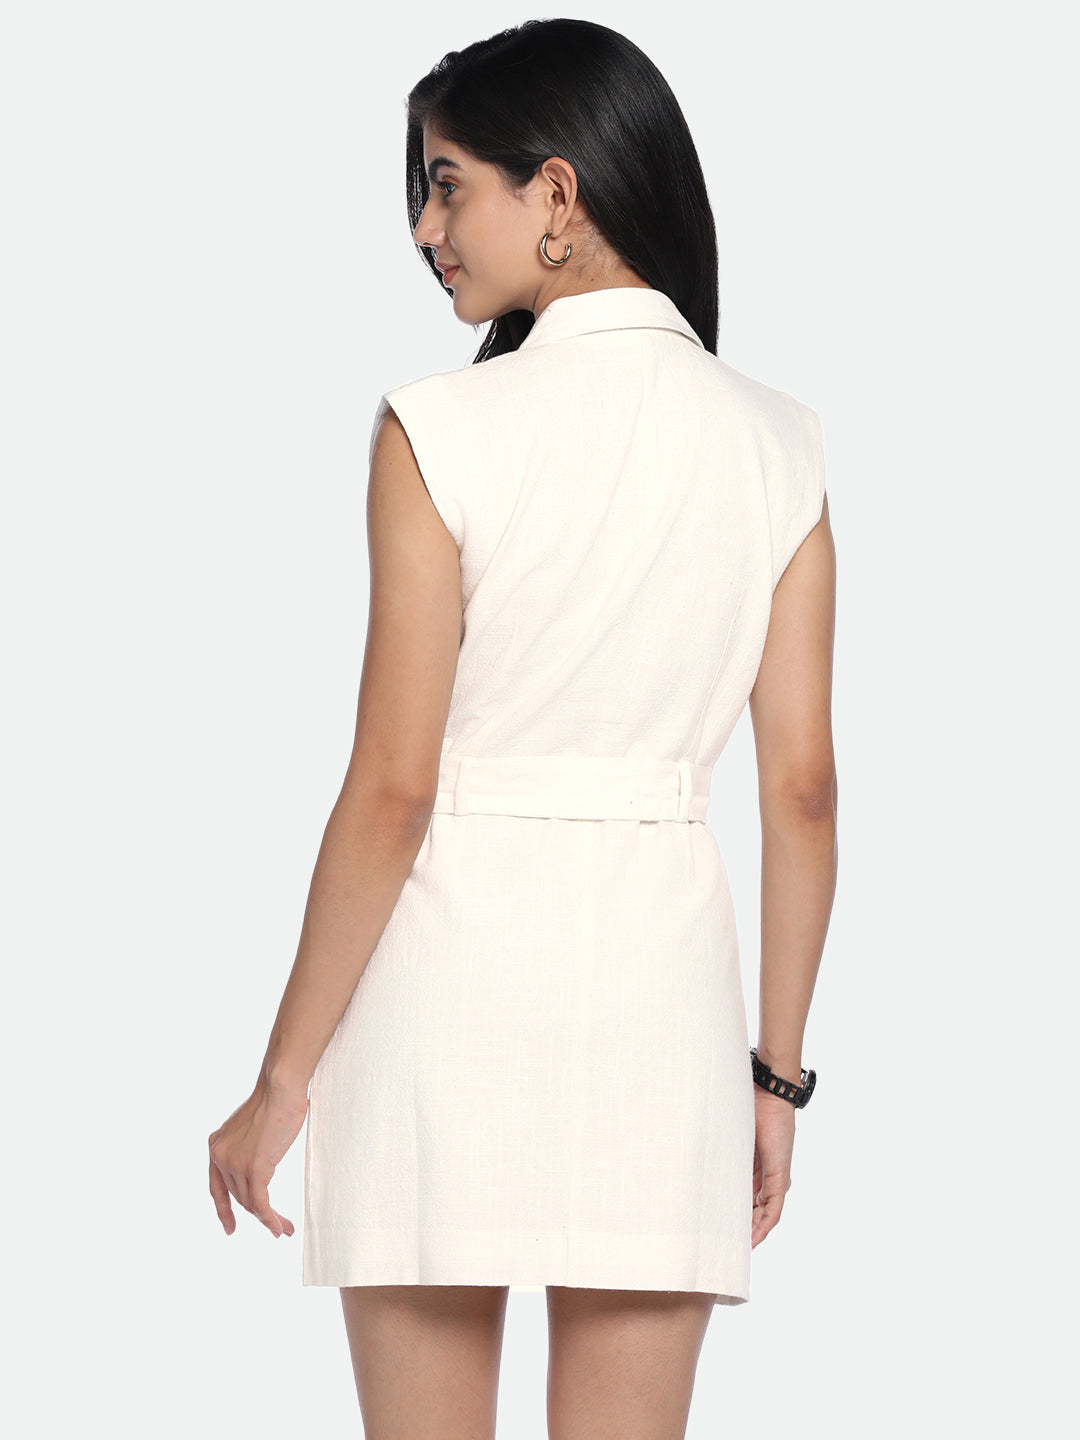 DL Woman V-Neck Regular Fit Solid Off-White Dress